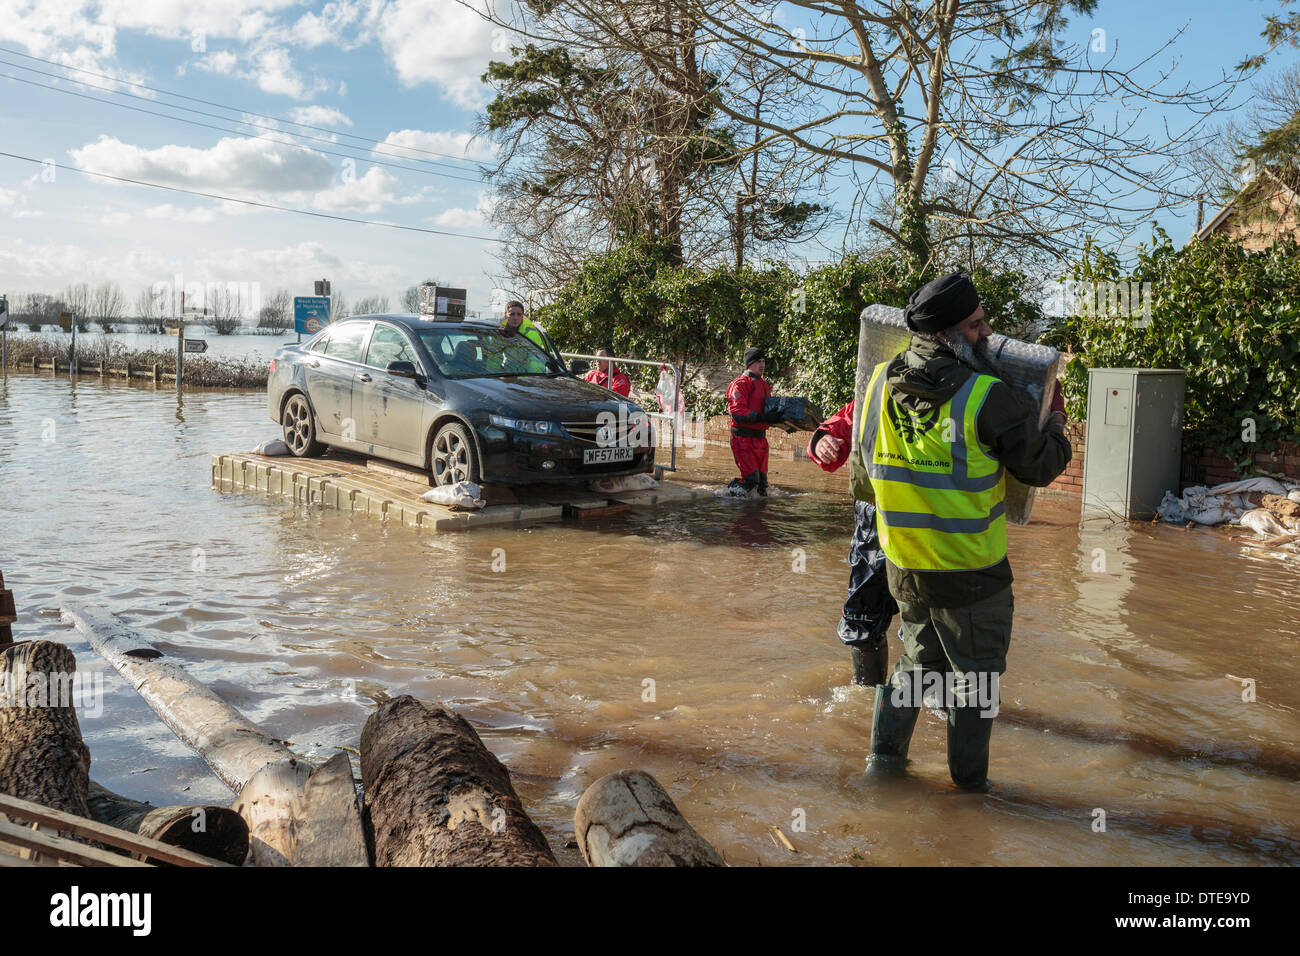 Burrowbridge, Reino Unido. 16 Feb, 2014. Voluntarios de rescate un Honda Accord durante las fuertes inundaciones en el Somerset niveles el 16 de febrero de 2014. El coche estaba lleno de pertenencias y conducir a un pontón y vehículos utilizados para el transporte de ganado y la ayuda en la comunidad inundadas. Un miembro de la organización de ayuda Khalsa lleva a cajas de seguridad. El A361 es una importante vía arterial a través de los niveles de Somerset y acaba sufrió la peor inundación en su historia y ha sido ahora submarina durante siete semanas. Crédito: Nick Cable/Alamy Live News Foto de stock